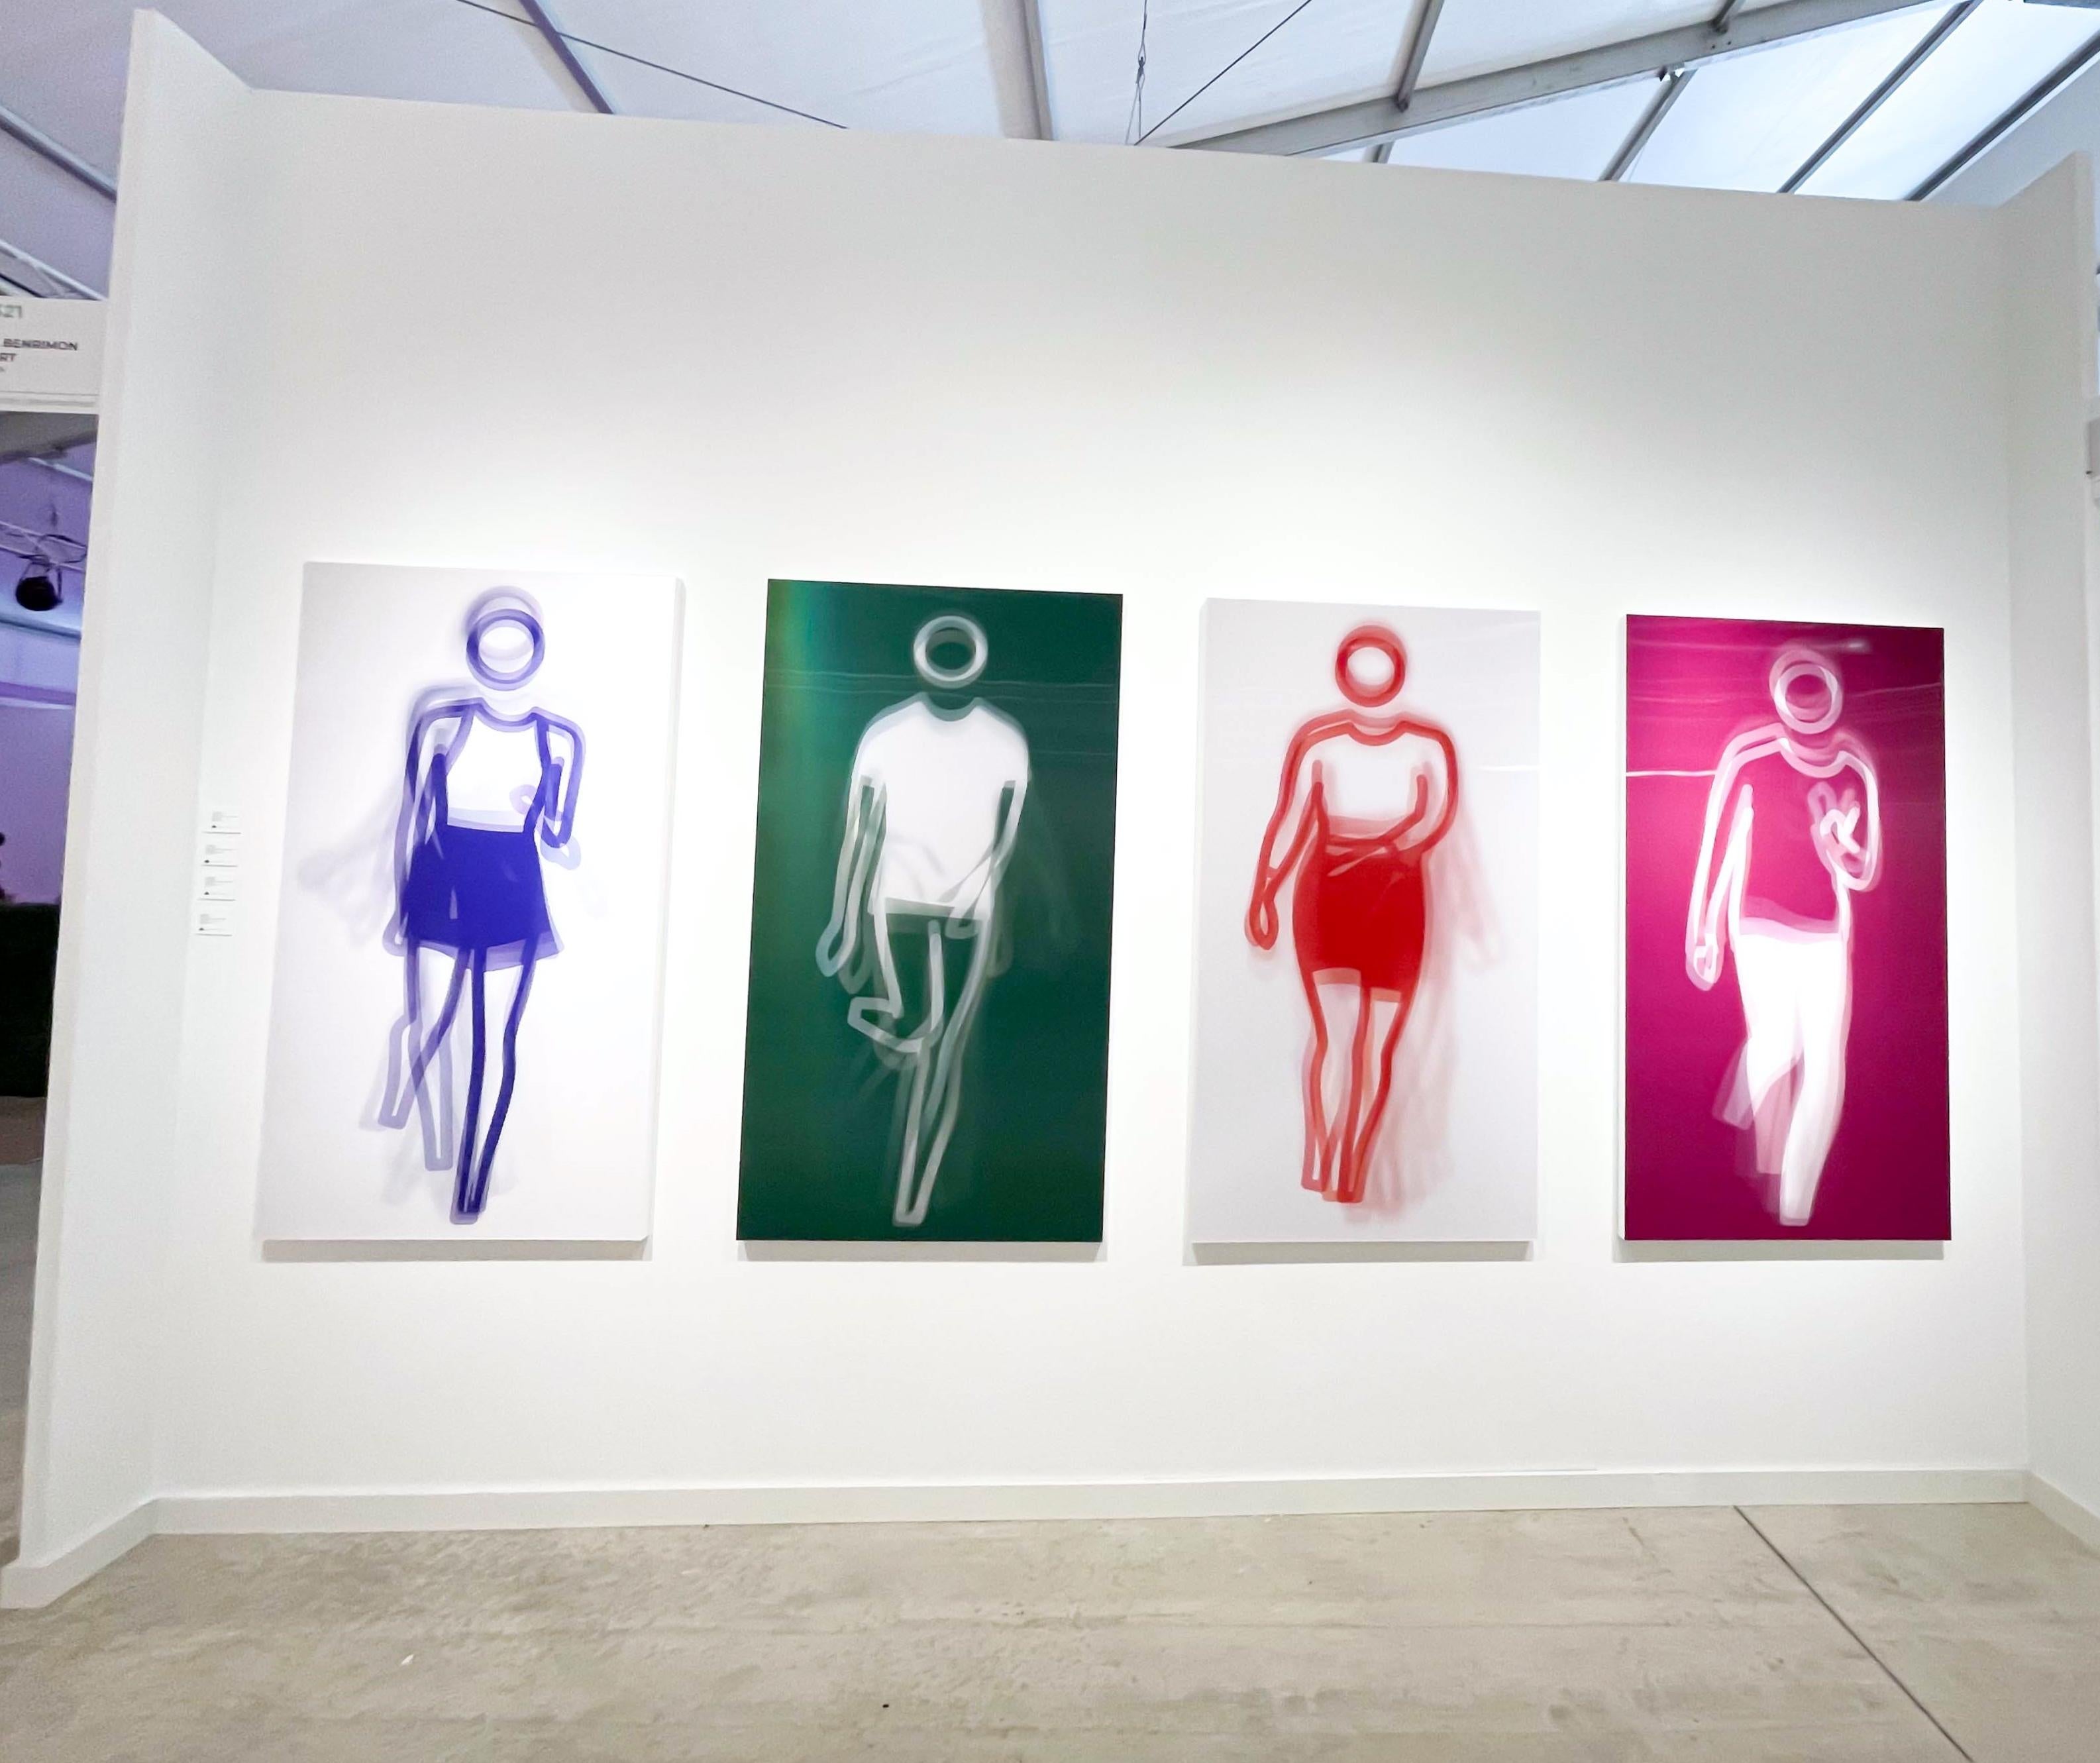 Bewegte große zeitgenössische Acryltafel mit tanzender Figur, vier Farben, Tanz 4 (Pop-Art), Print, von Julian Opie